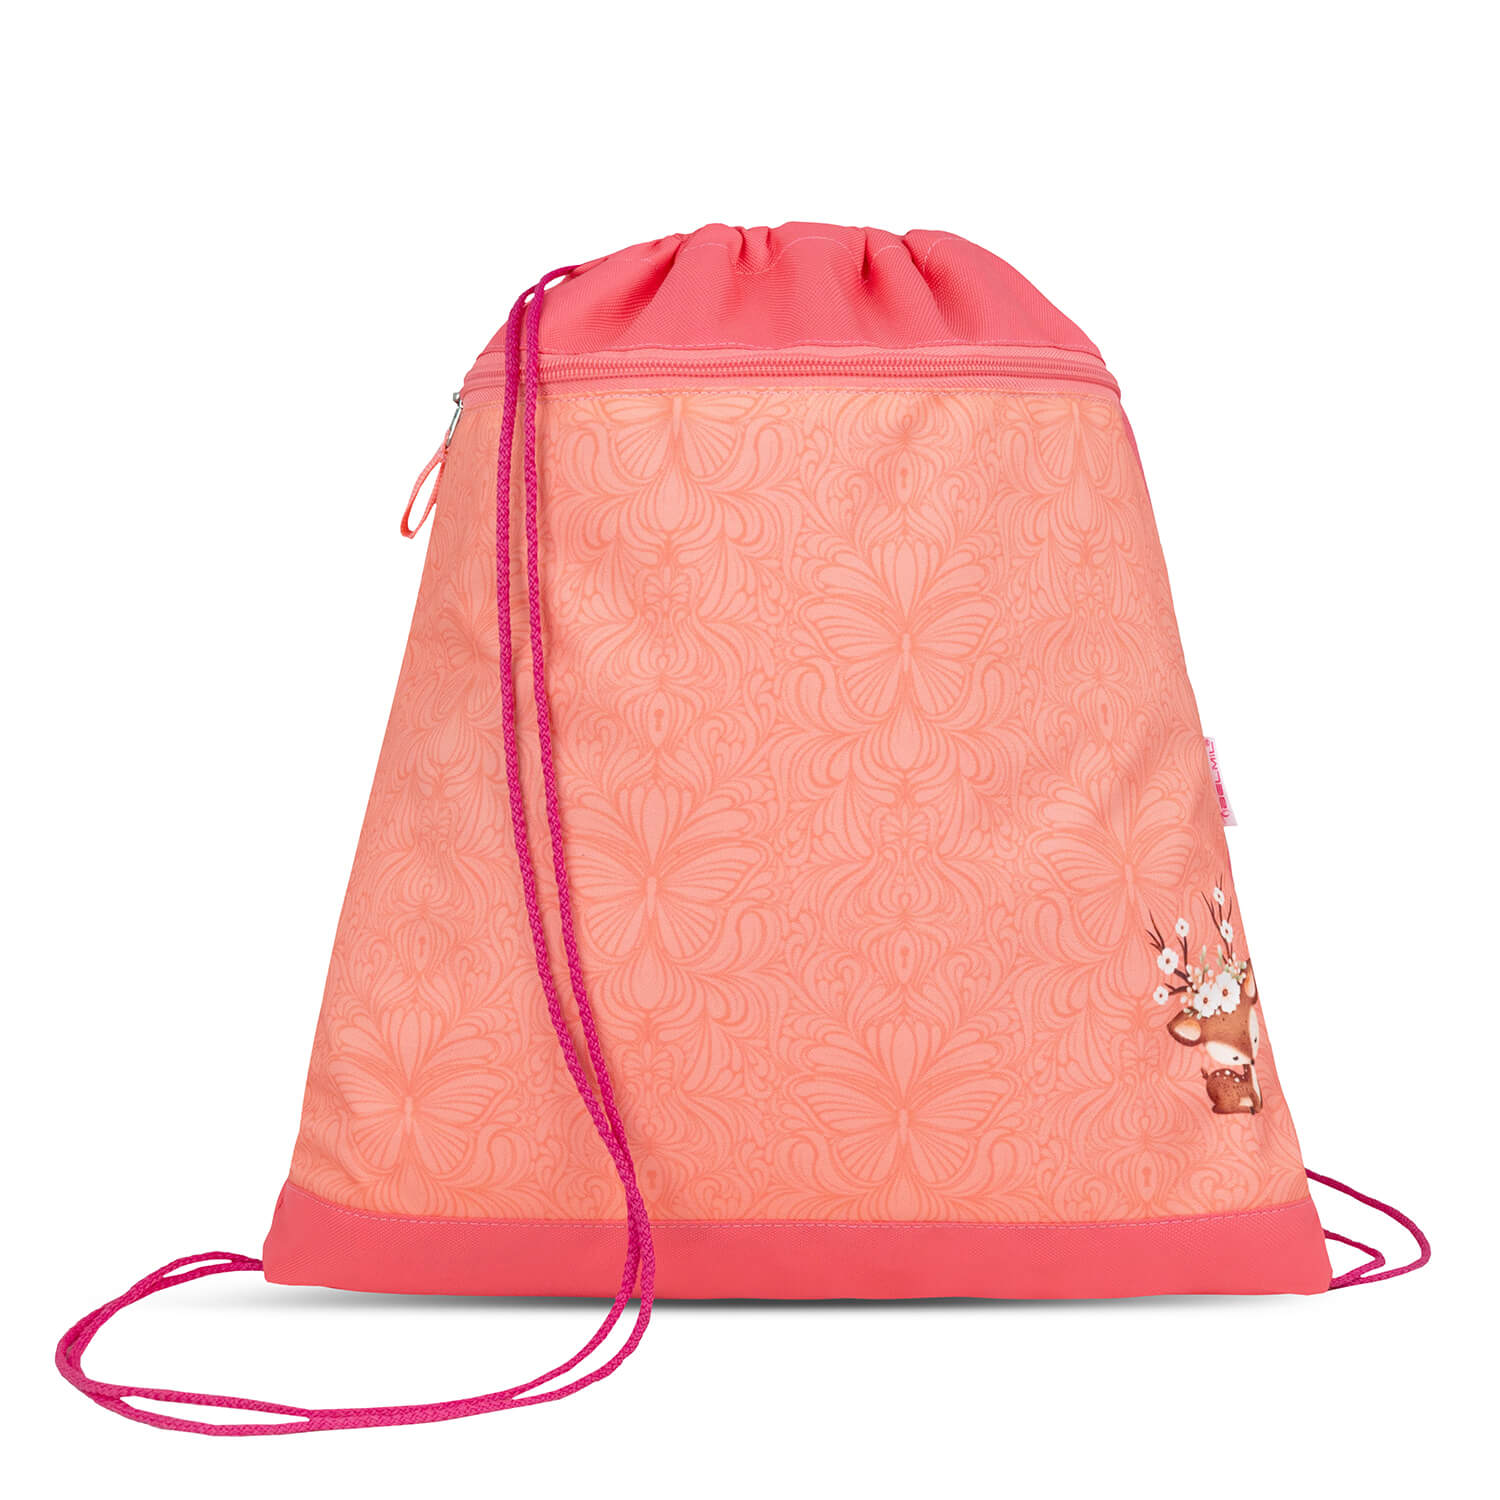 Mini-Fit Cute Doe schoolbag set 4 pcs